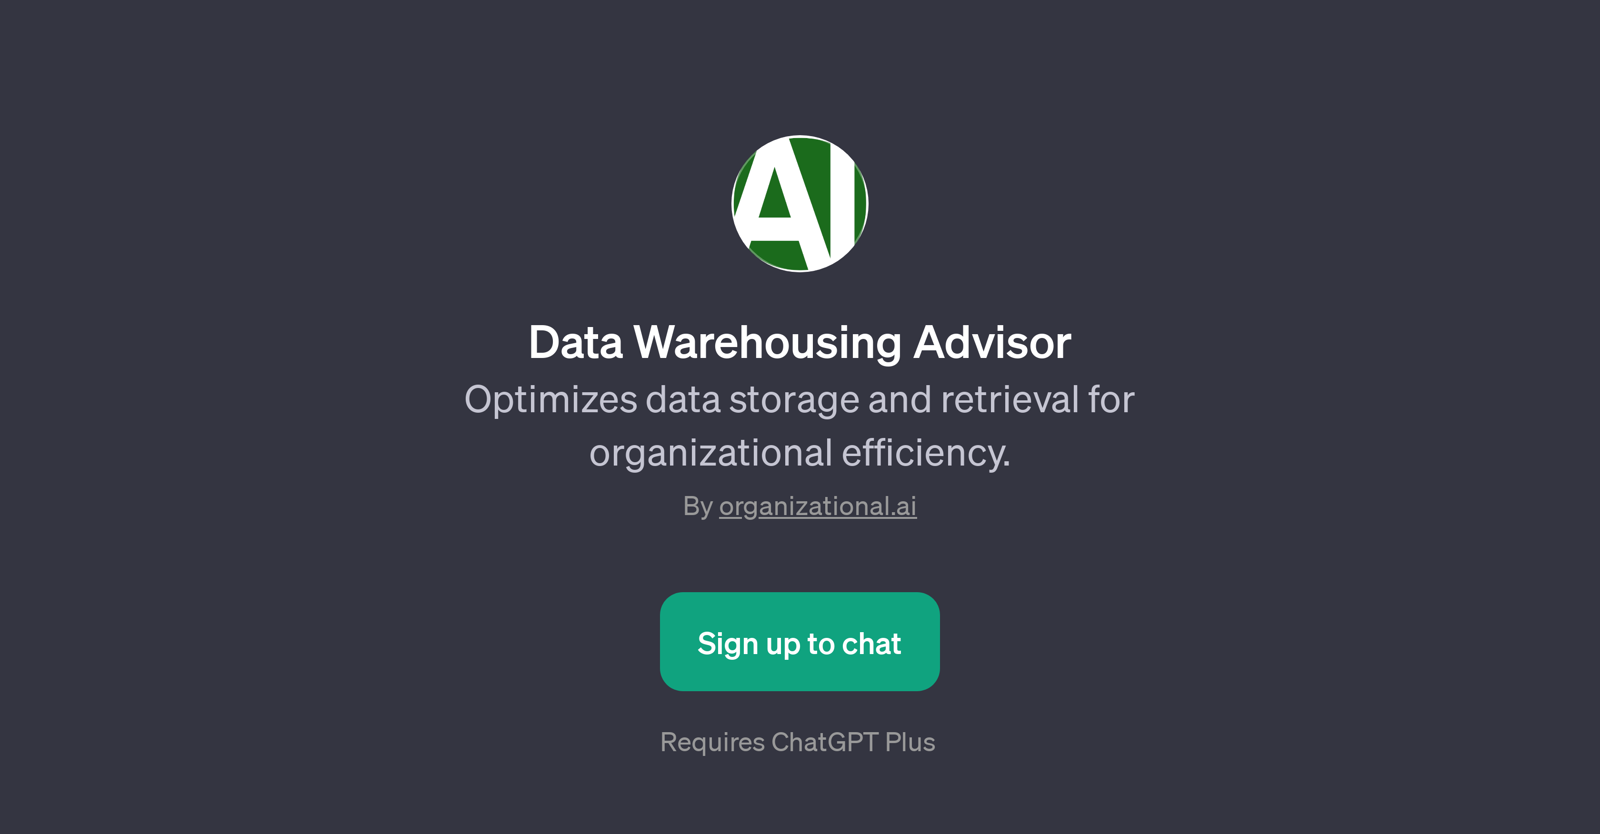 Data Warehousing Advisor website